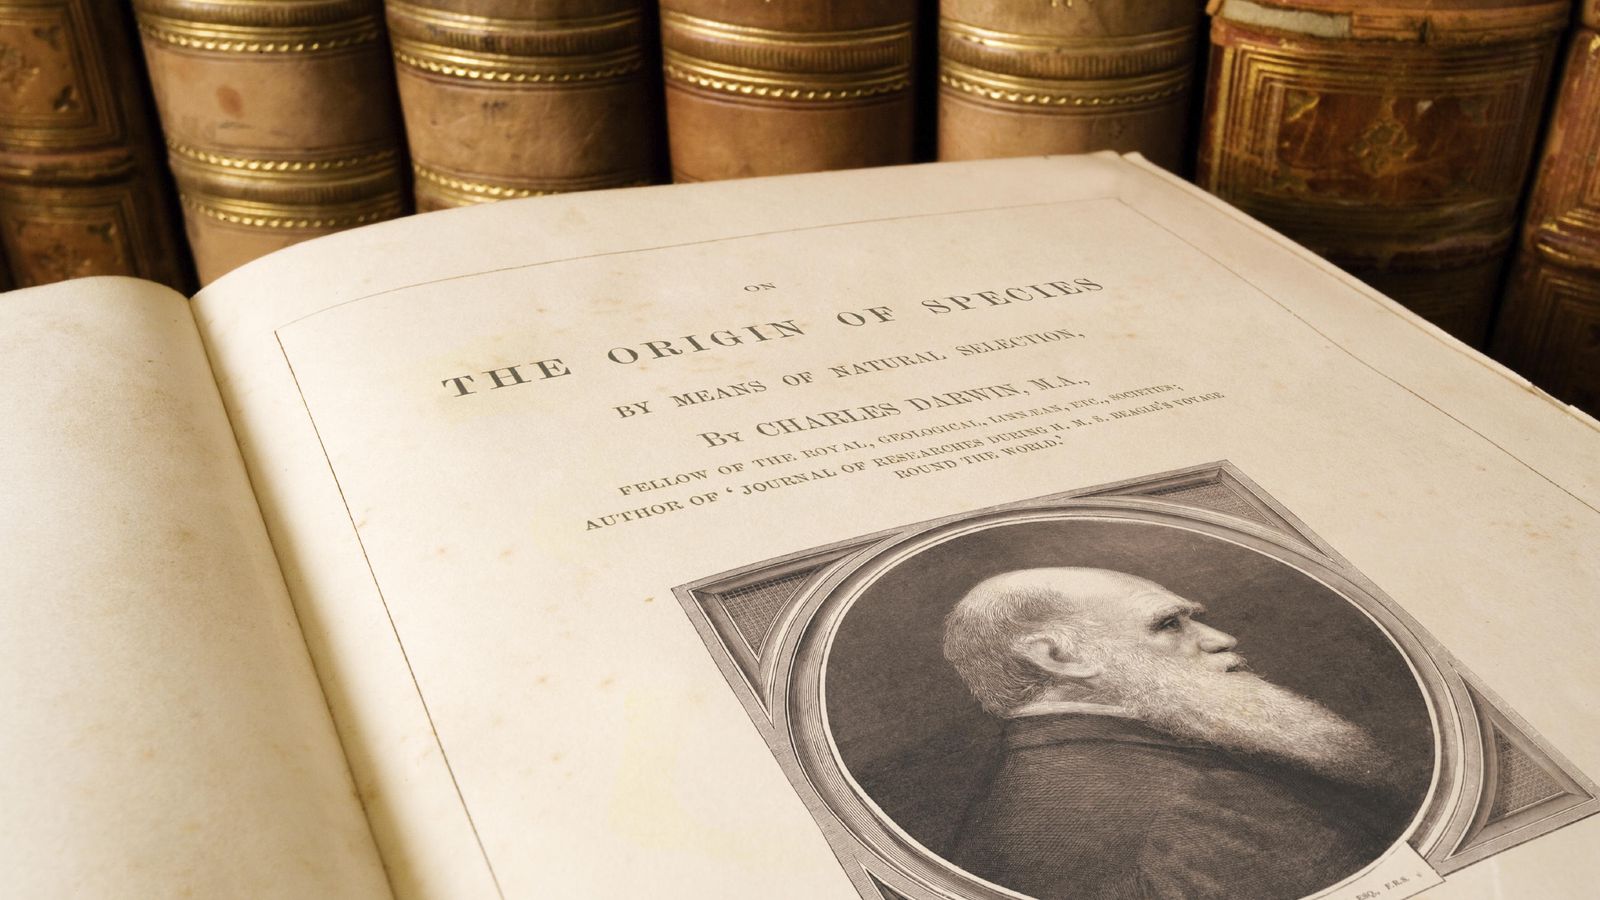 Foto: Una copia antigua de la obra cumbre de Darwin. (iStock)